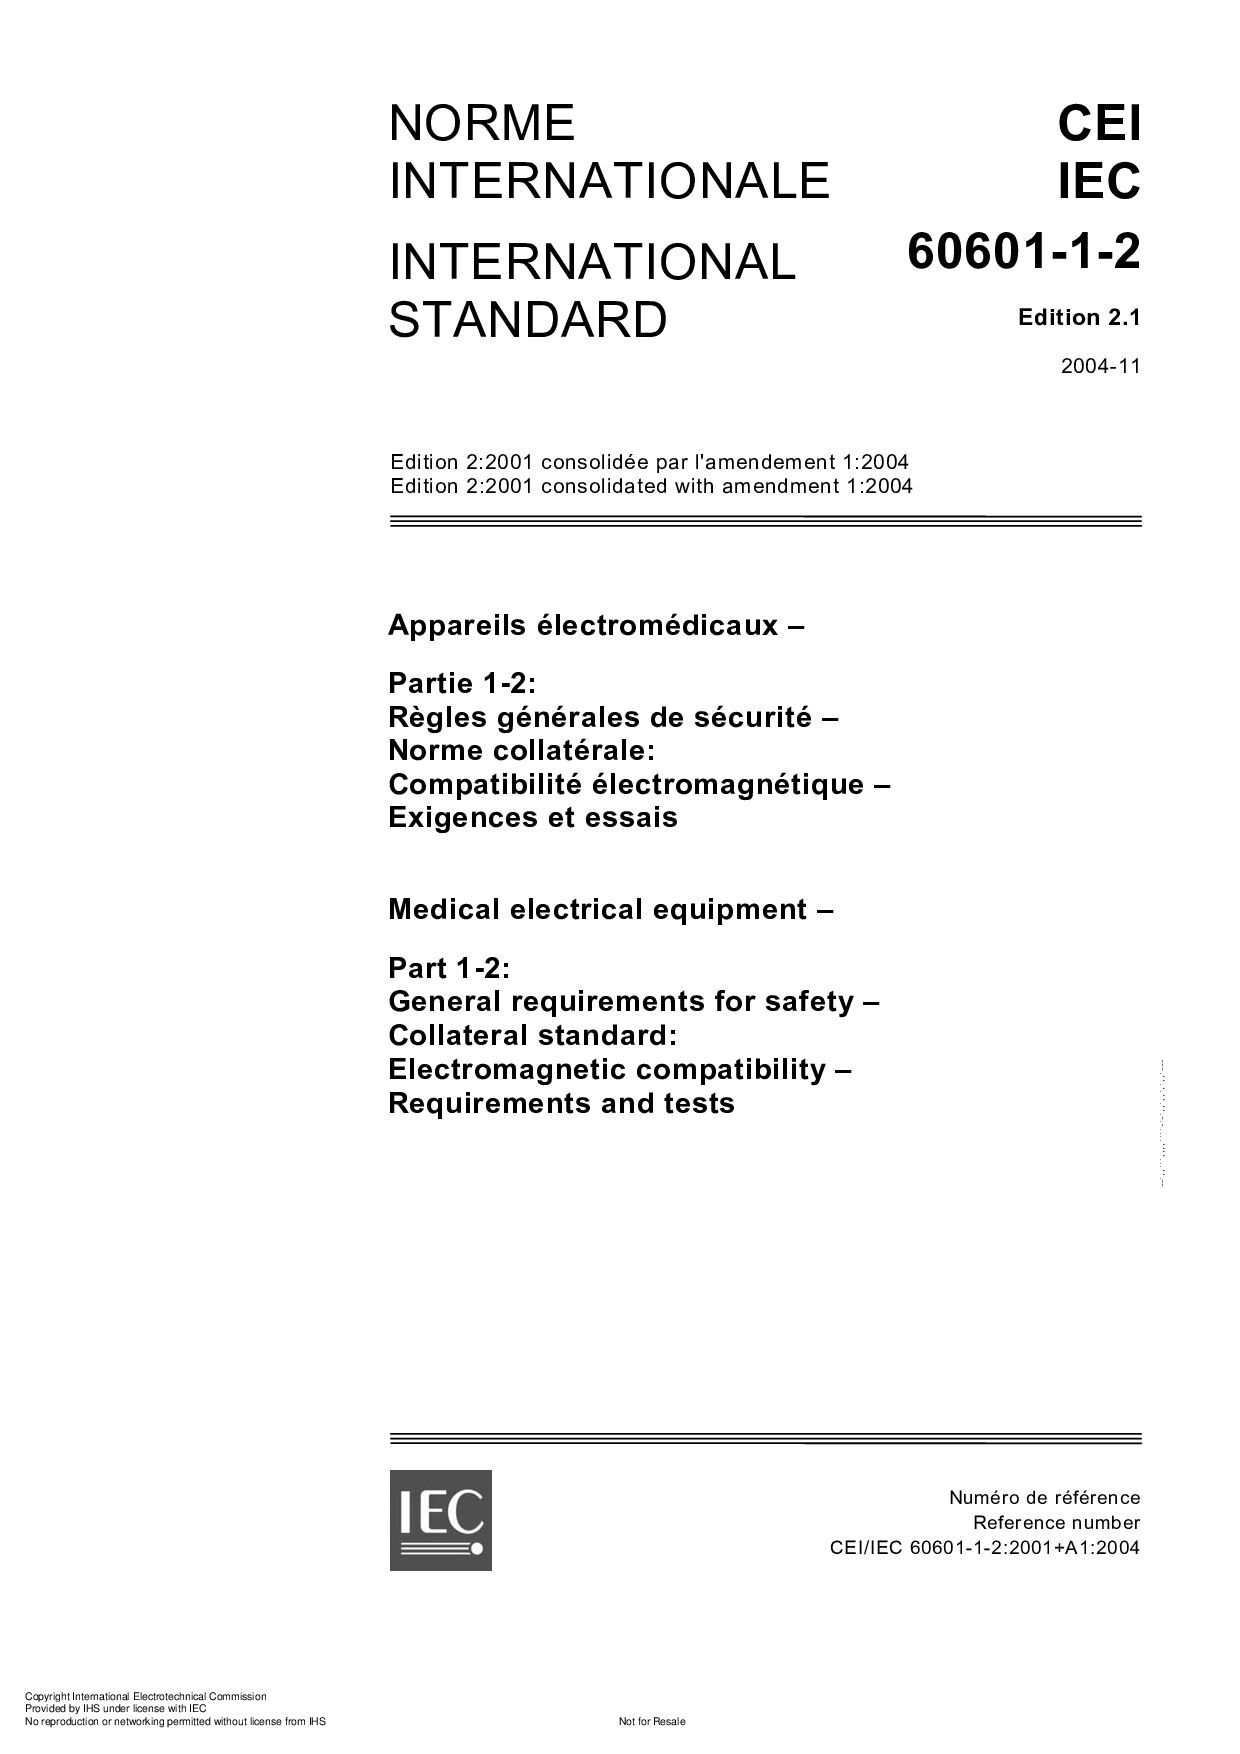 IEC 60601-1-2:2004